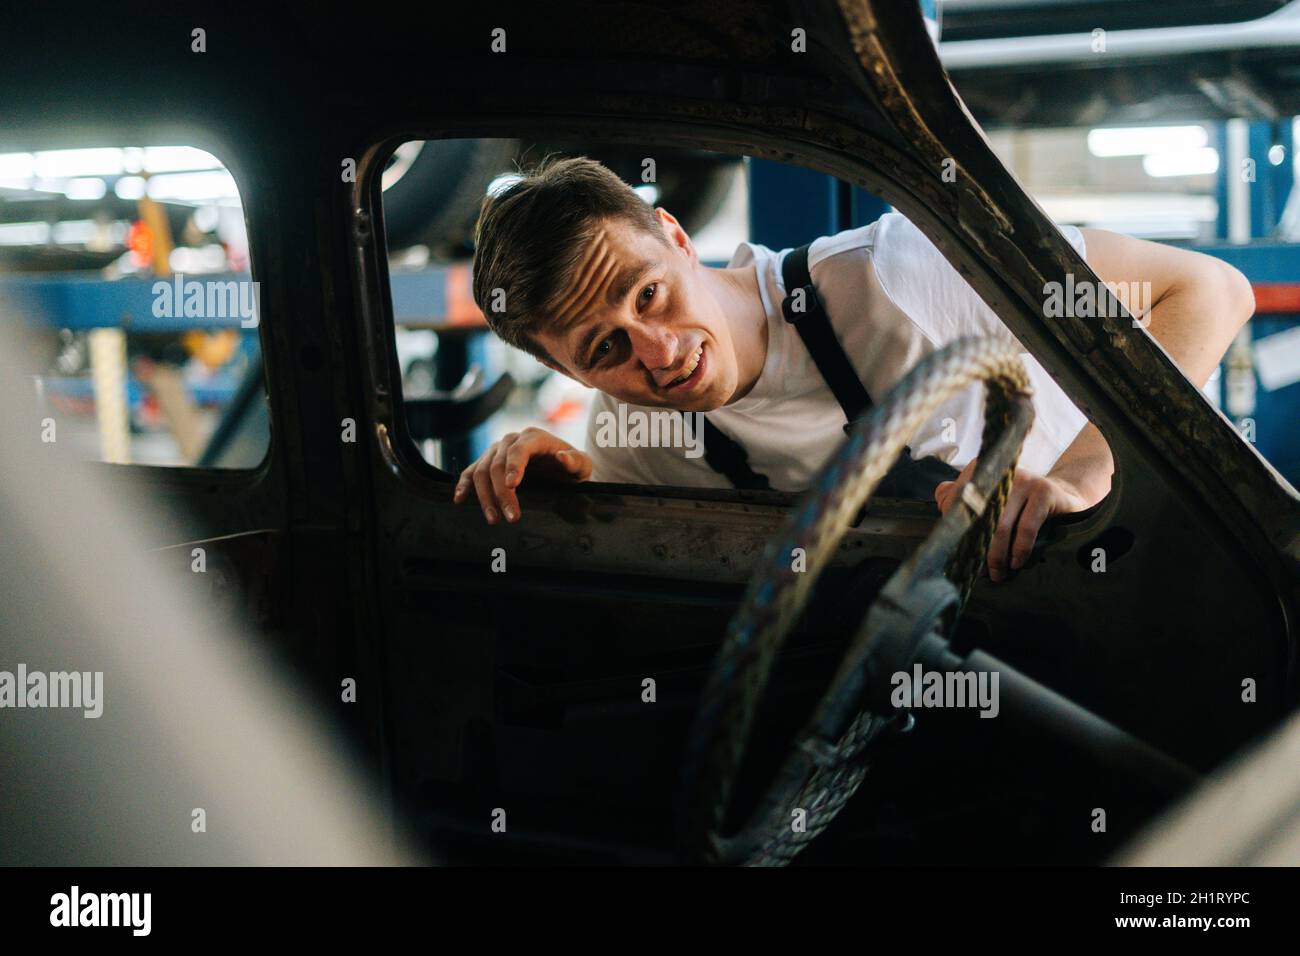 Vorderansicht des frustrierten jungen Service-Mannes in Uniform, der das Innere des alten Autos in der Autowerkstatt mit Fahrzeughintergrund inspiziert. Stockfoto